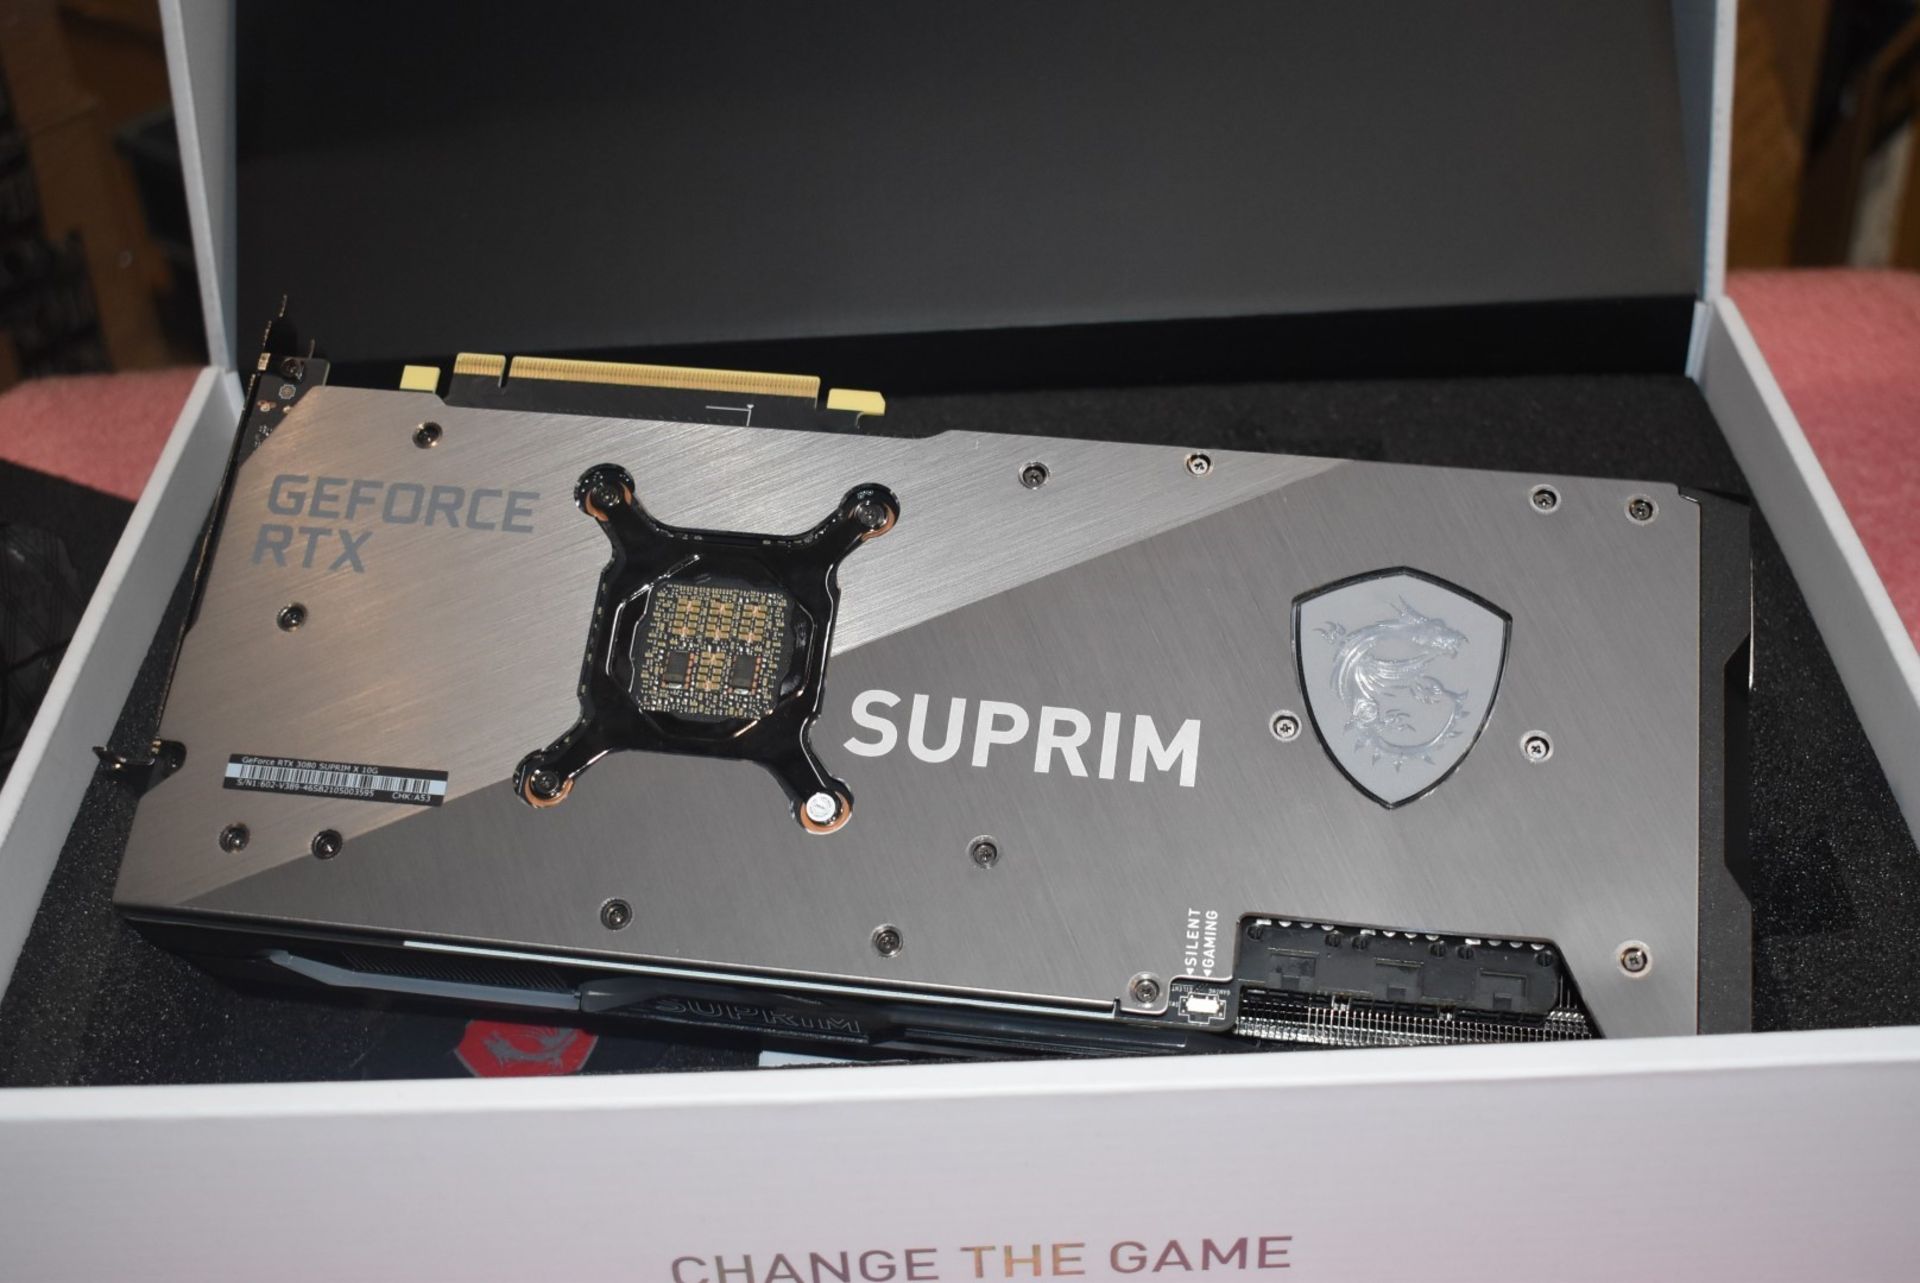 1 x MSI SuprimX Geforce RTX3080 10GB Graphics Card - Spares or Repairs - Bild 5 aus 13